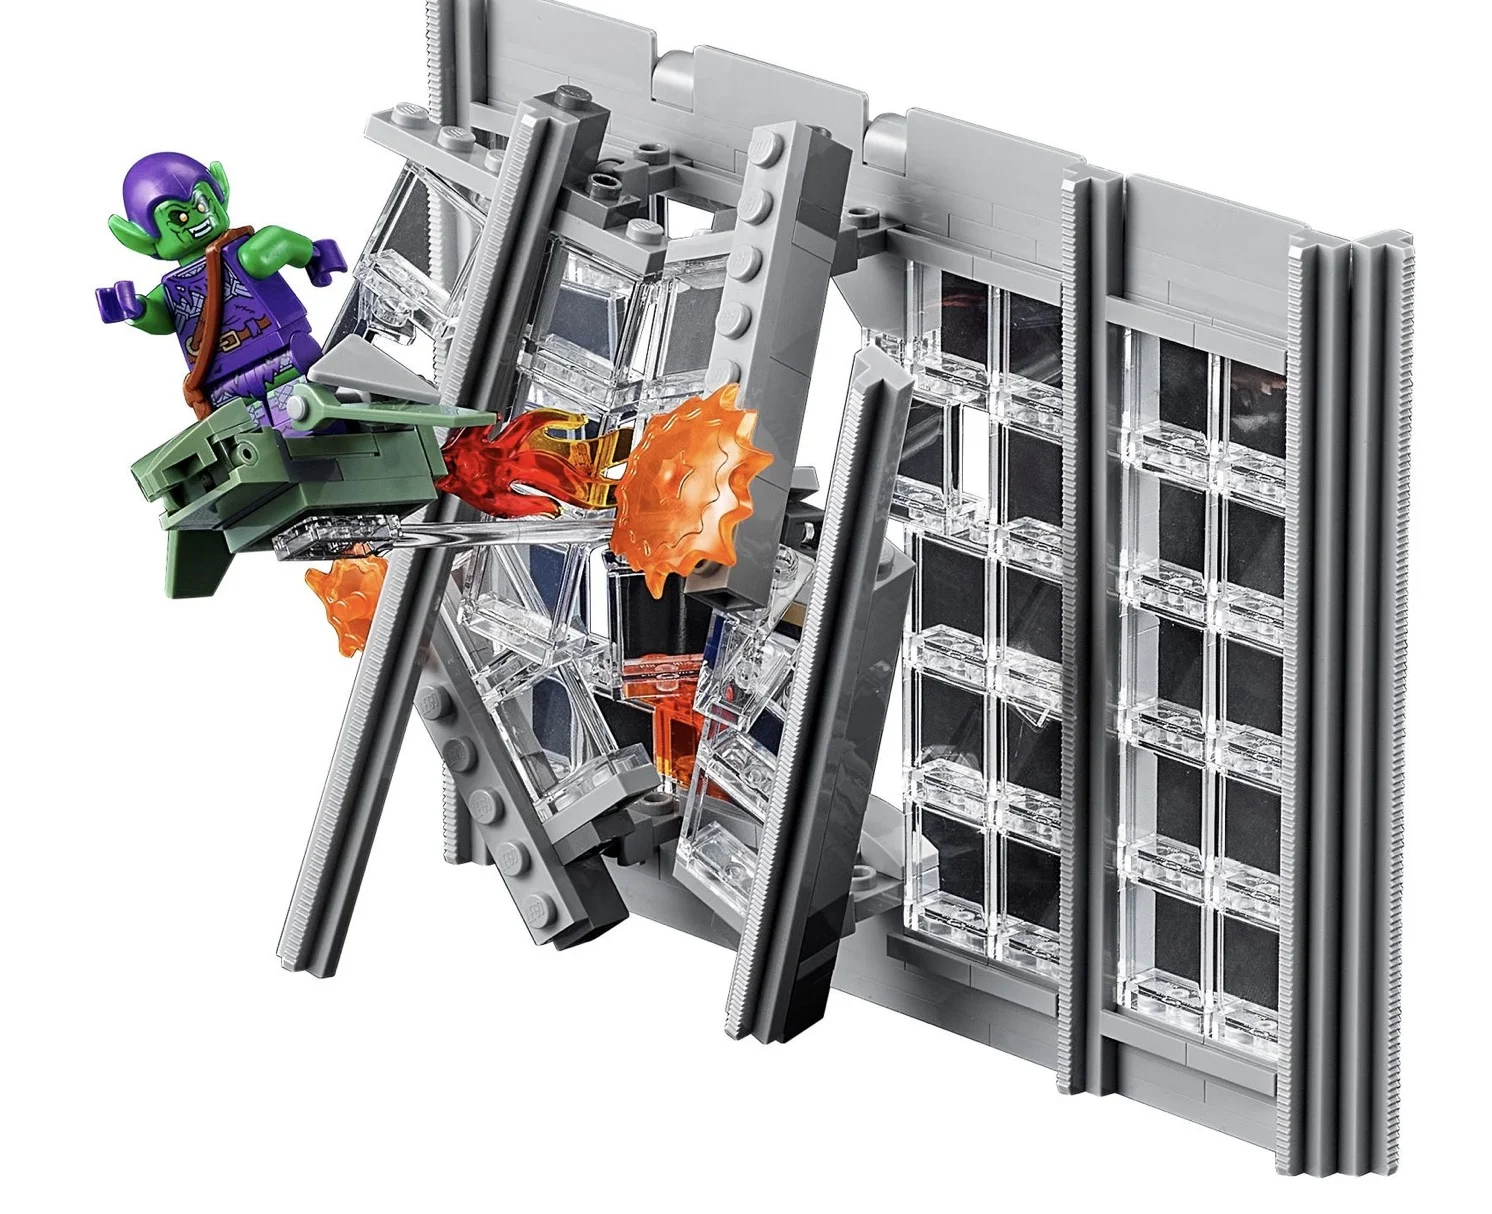 LEGO выпустит набор со зданием The Daily Bugle из «Человека-паука». 3772 детали! - фото 3